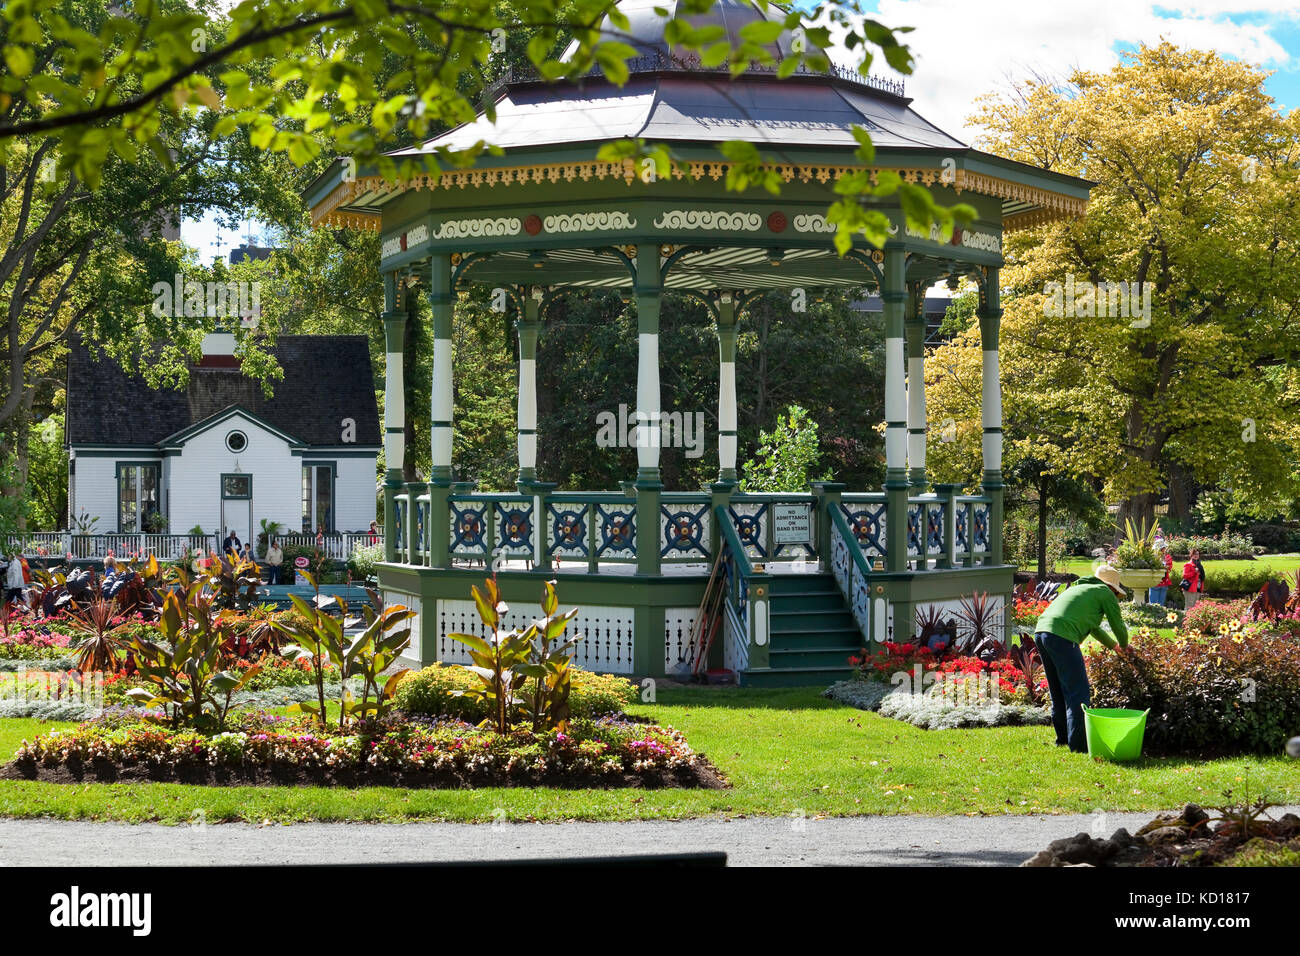 In legno ornati bandstand costruito per commemorare la Regina Vittoria per il Giubileo d oro nel 1887 e situato nel centro di Halifax Giardini Pubblici, Halifax, Nova Scotia, Canada. In fondo è il raro motivi Cafe Foto Stock